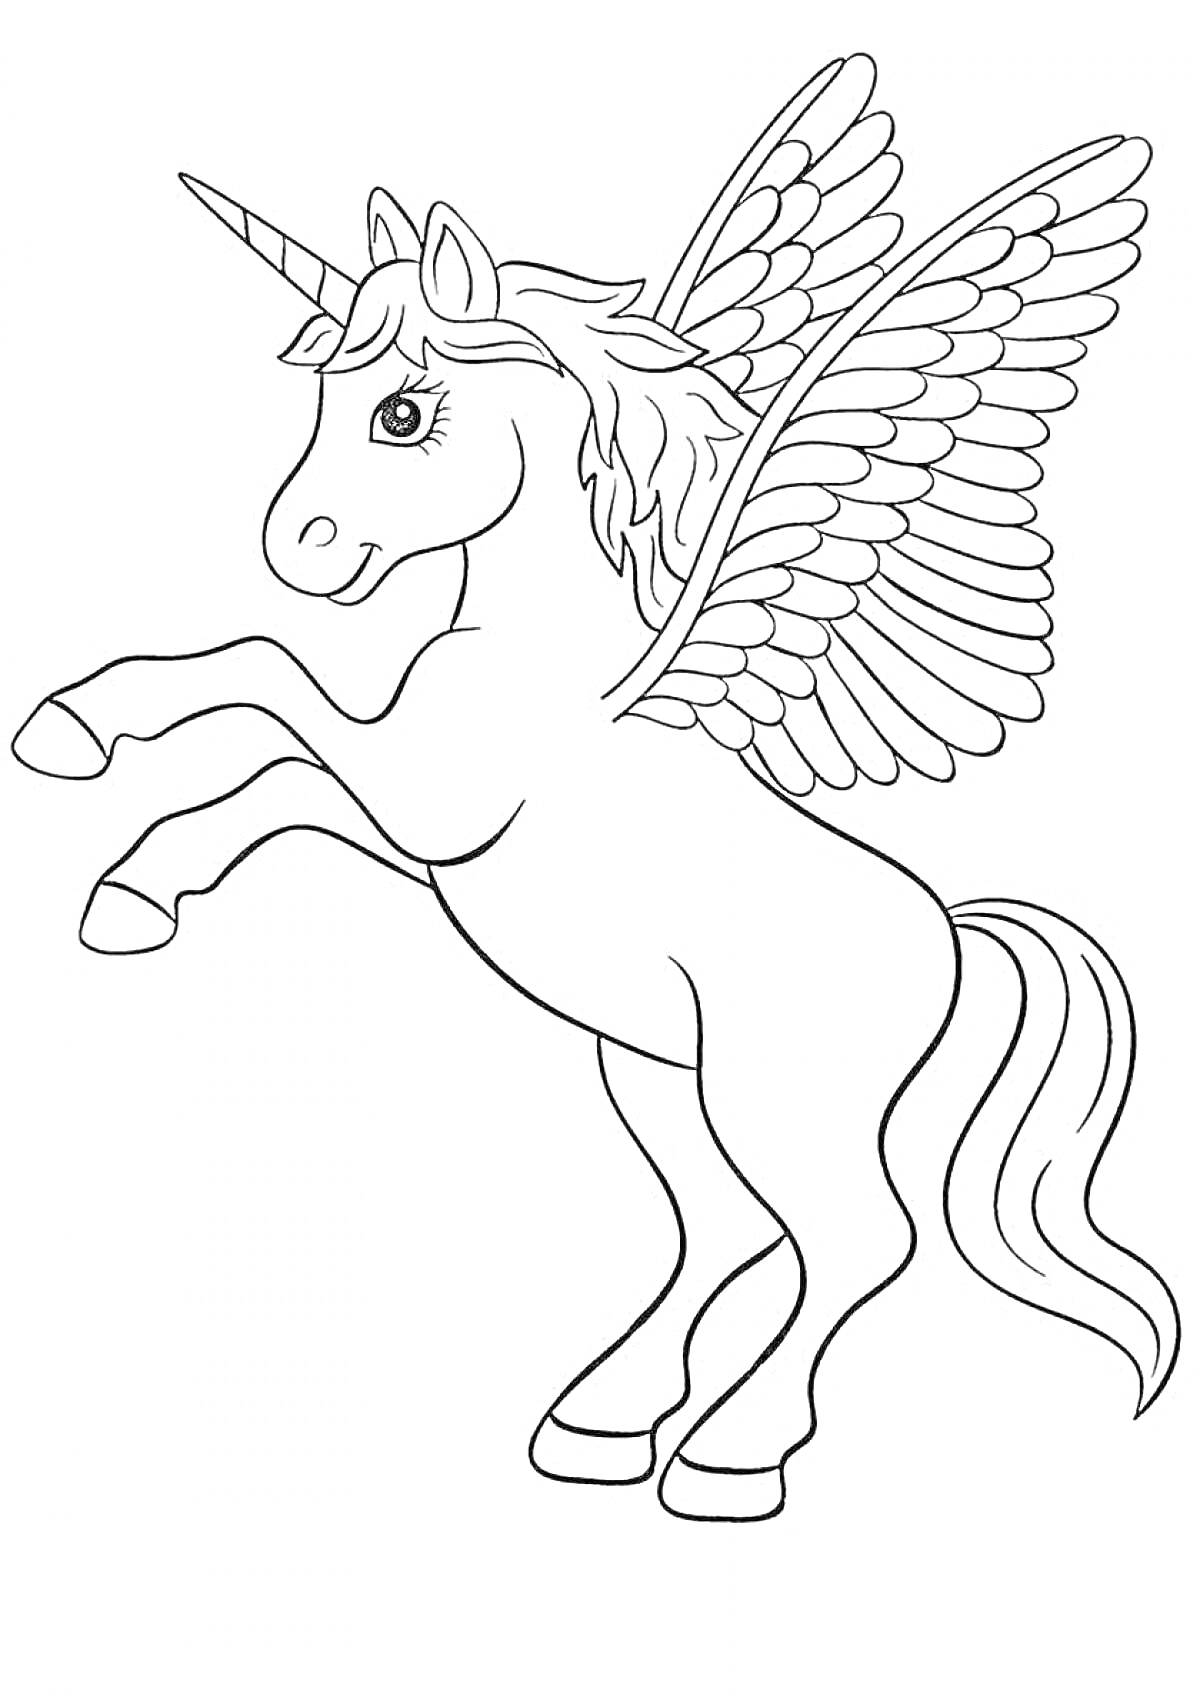 Раскраска Единорог с крыльями на задних ногах